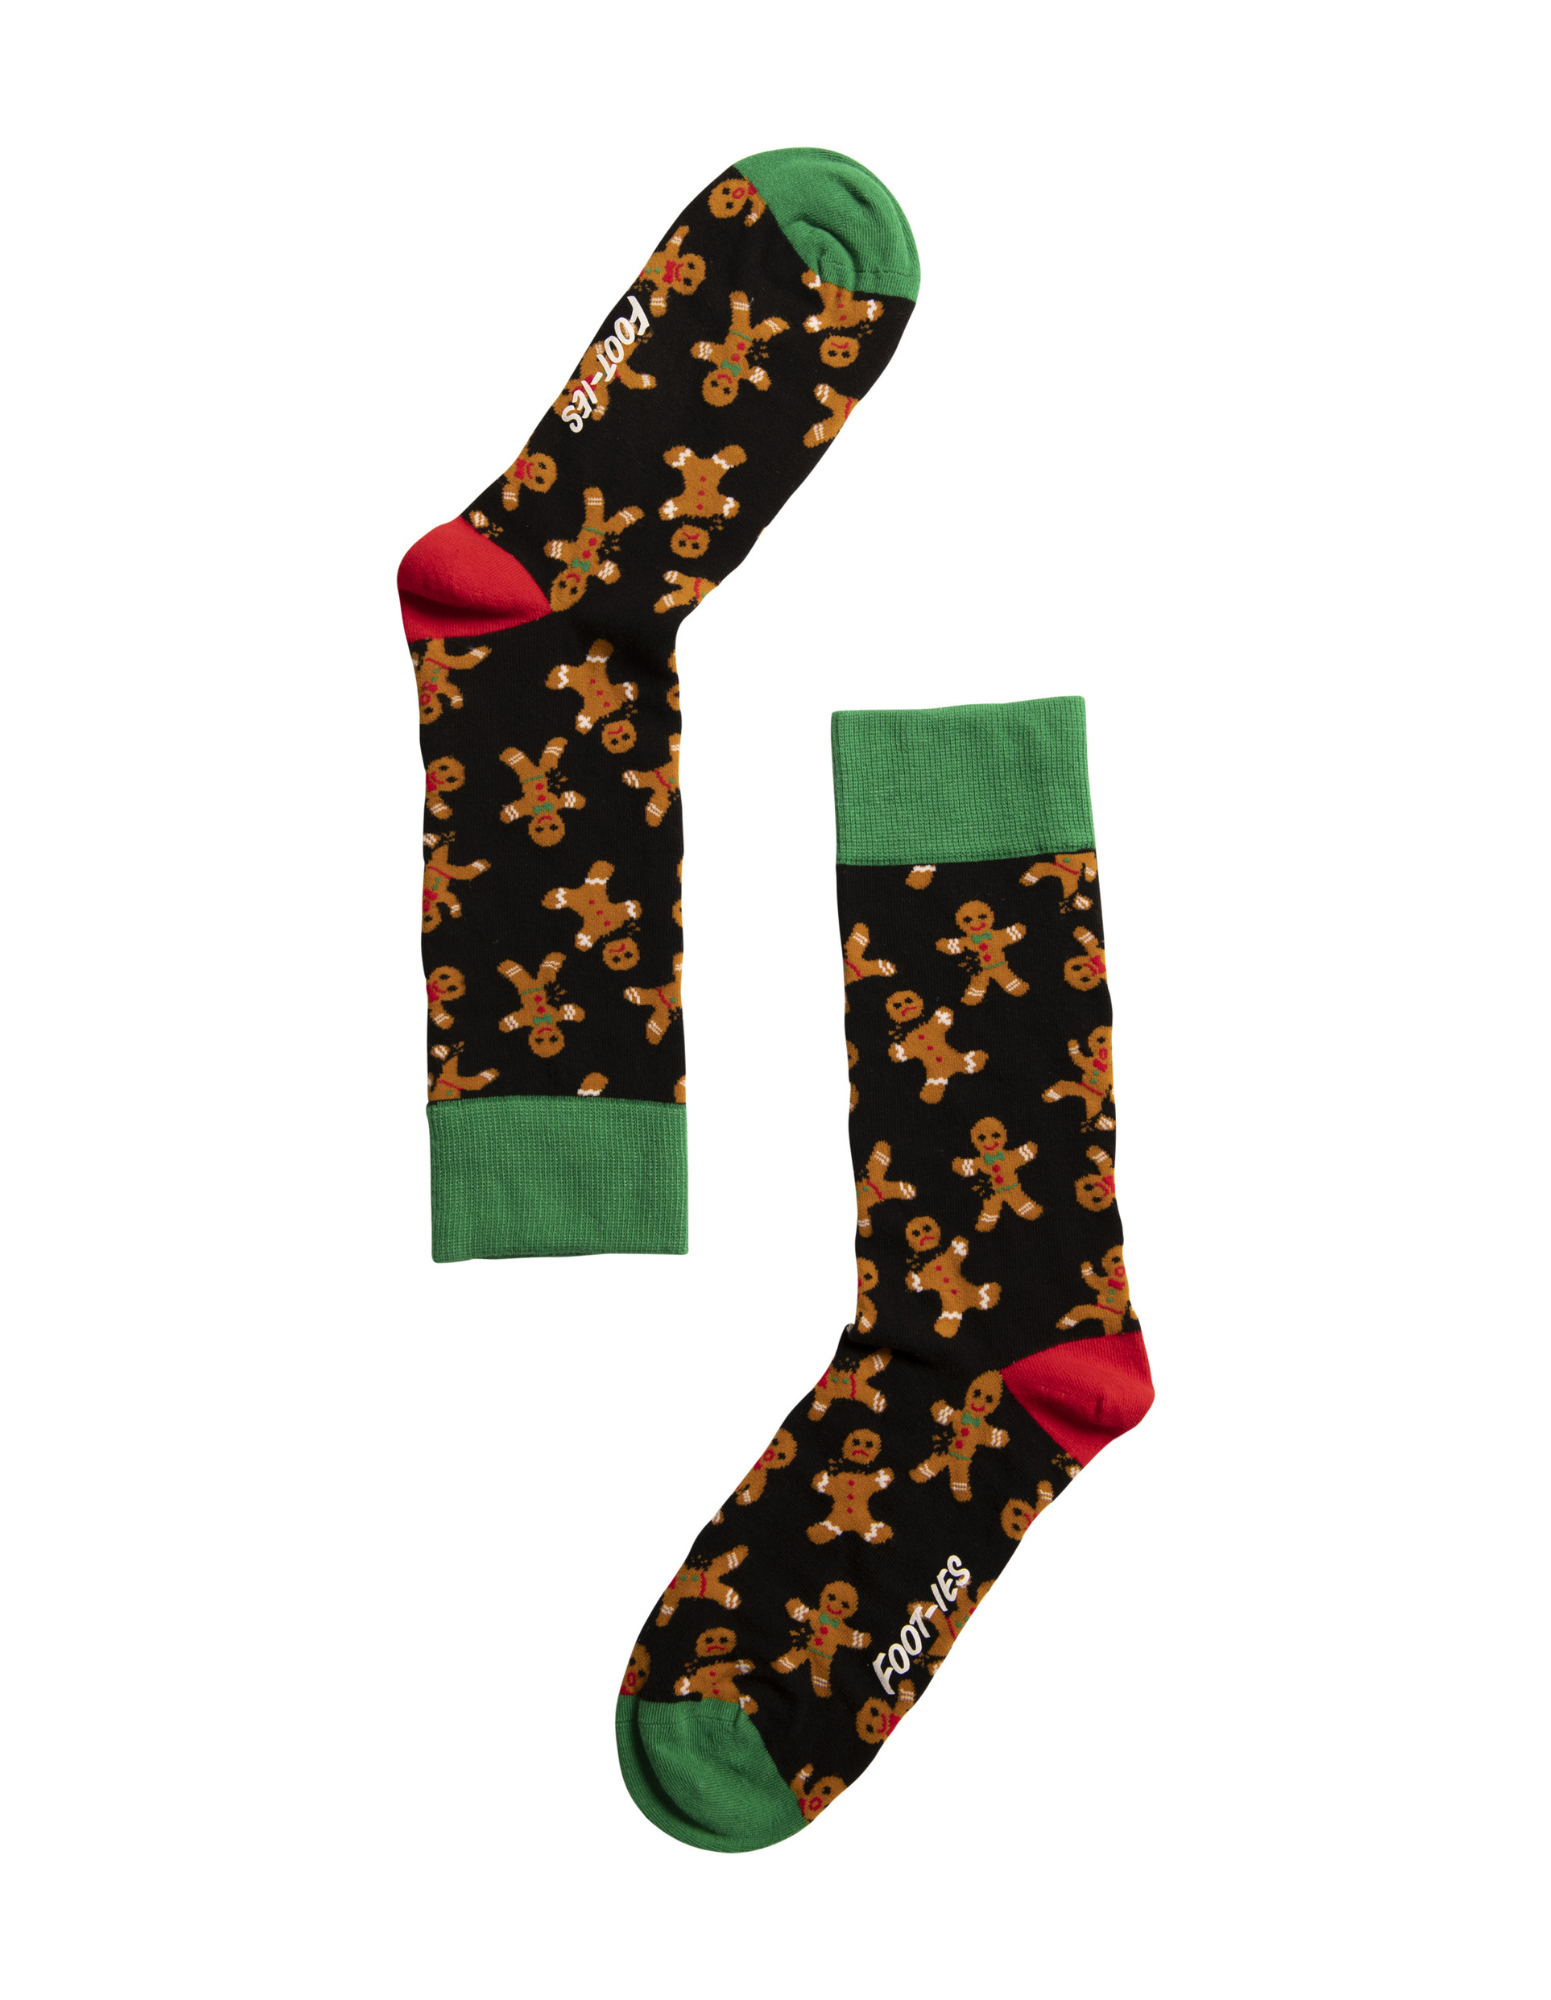 Gingerbread Christmas Crew Socks For Men